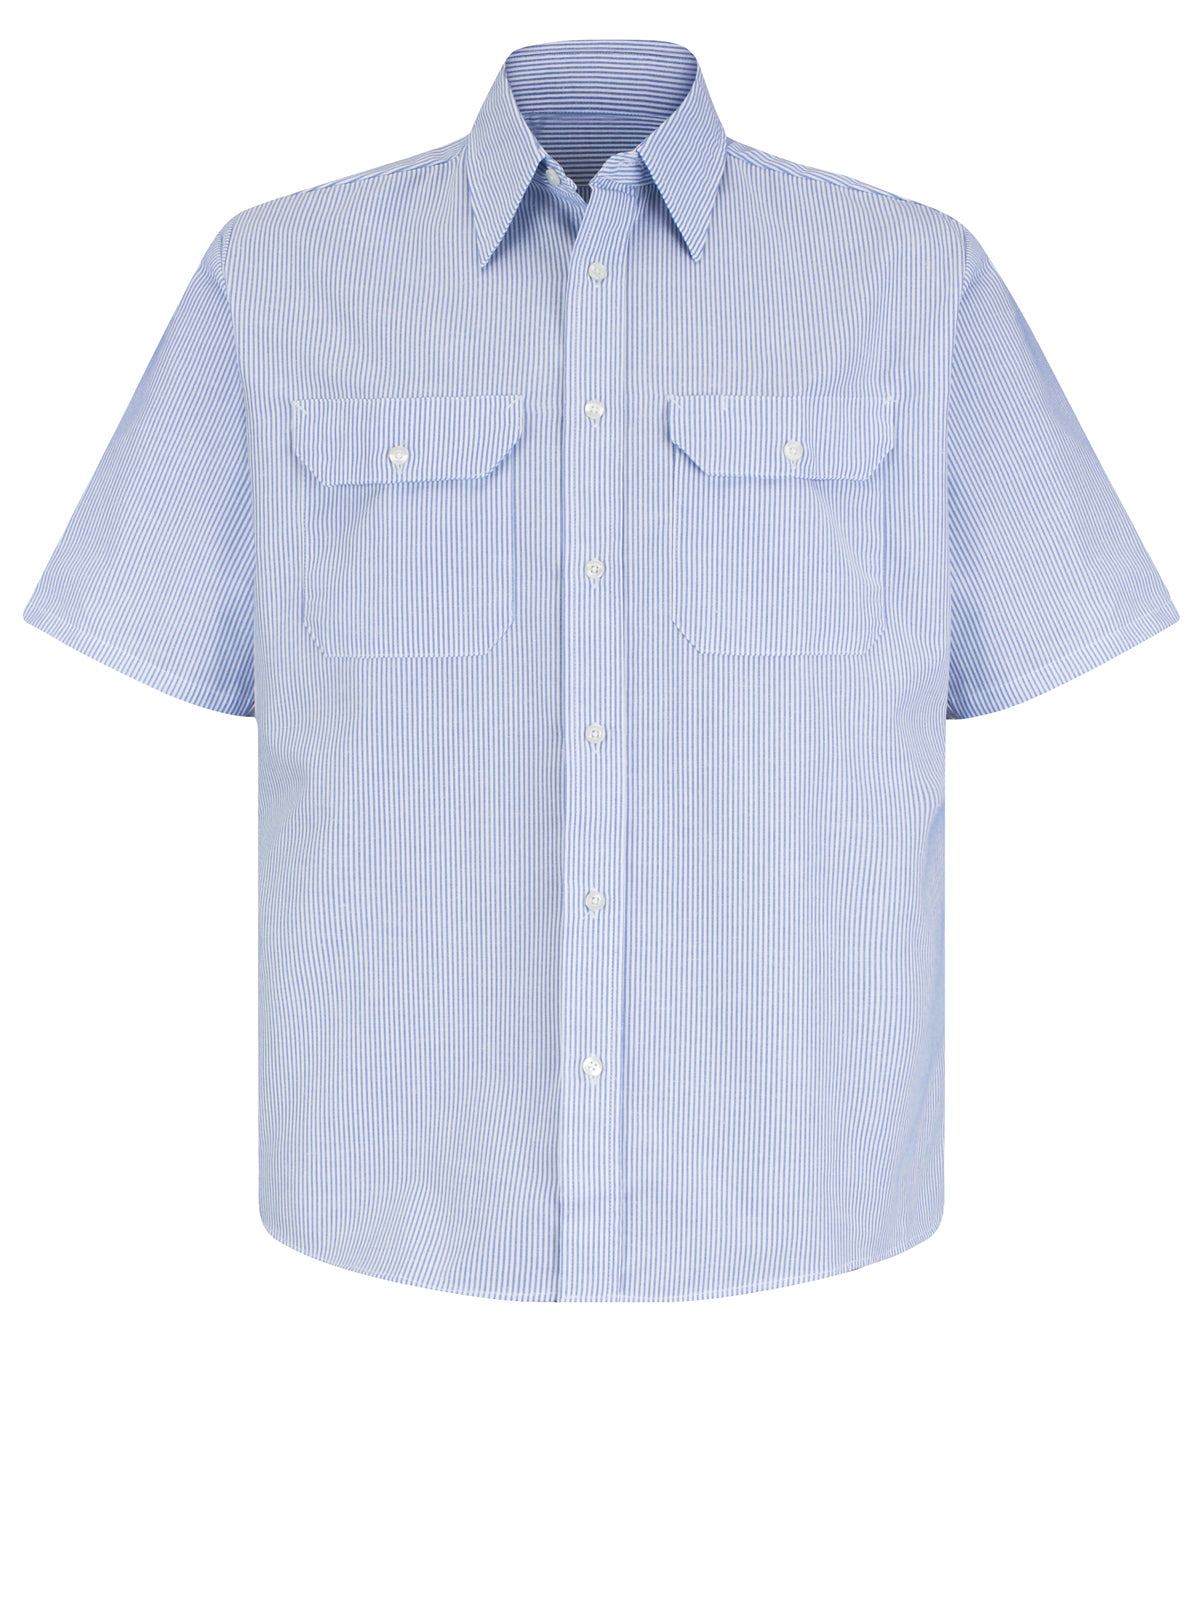 Men's Short Sleeve Deluxe Uniform Shirt - SL60 - White/Blue Pin Stripe